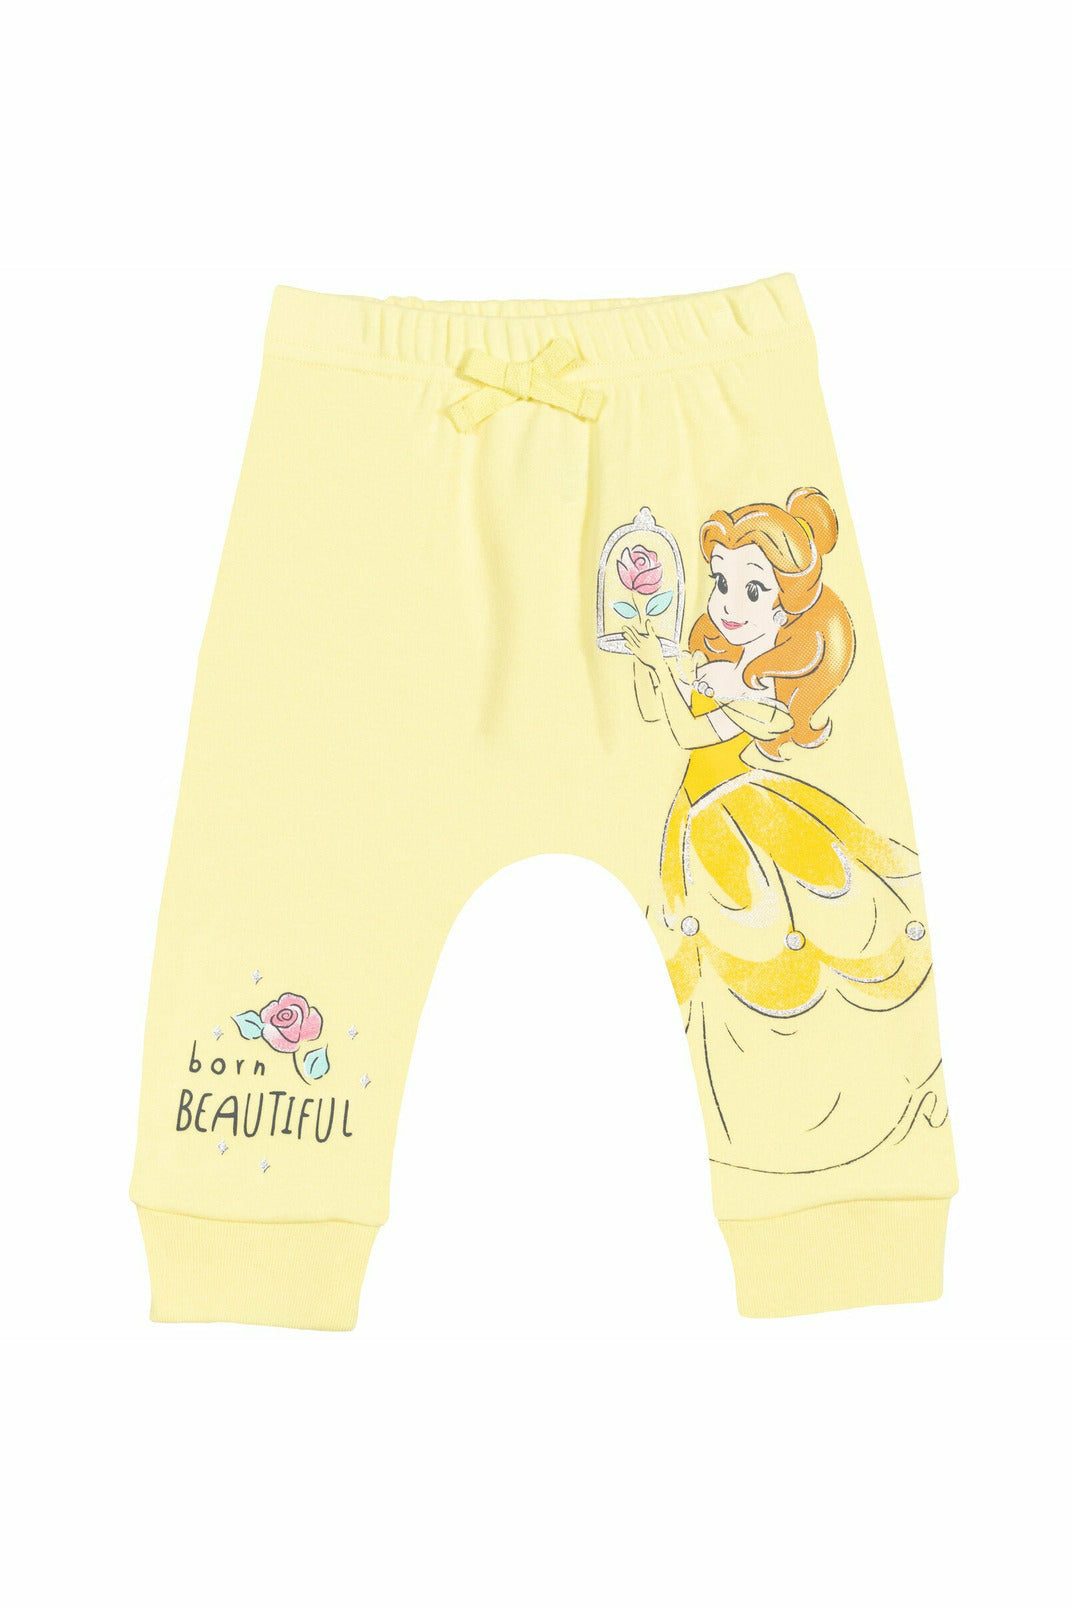 Disney Princesses 4 Pack Pants